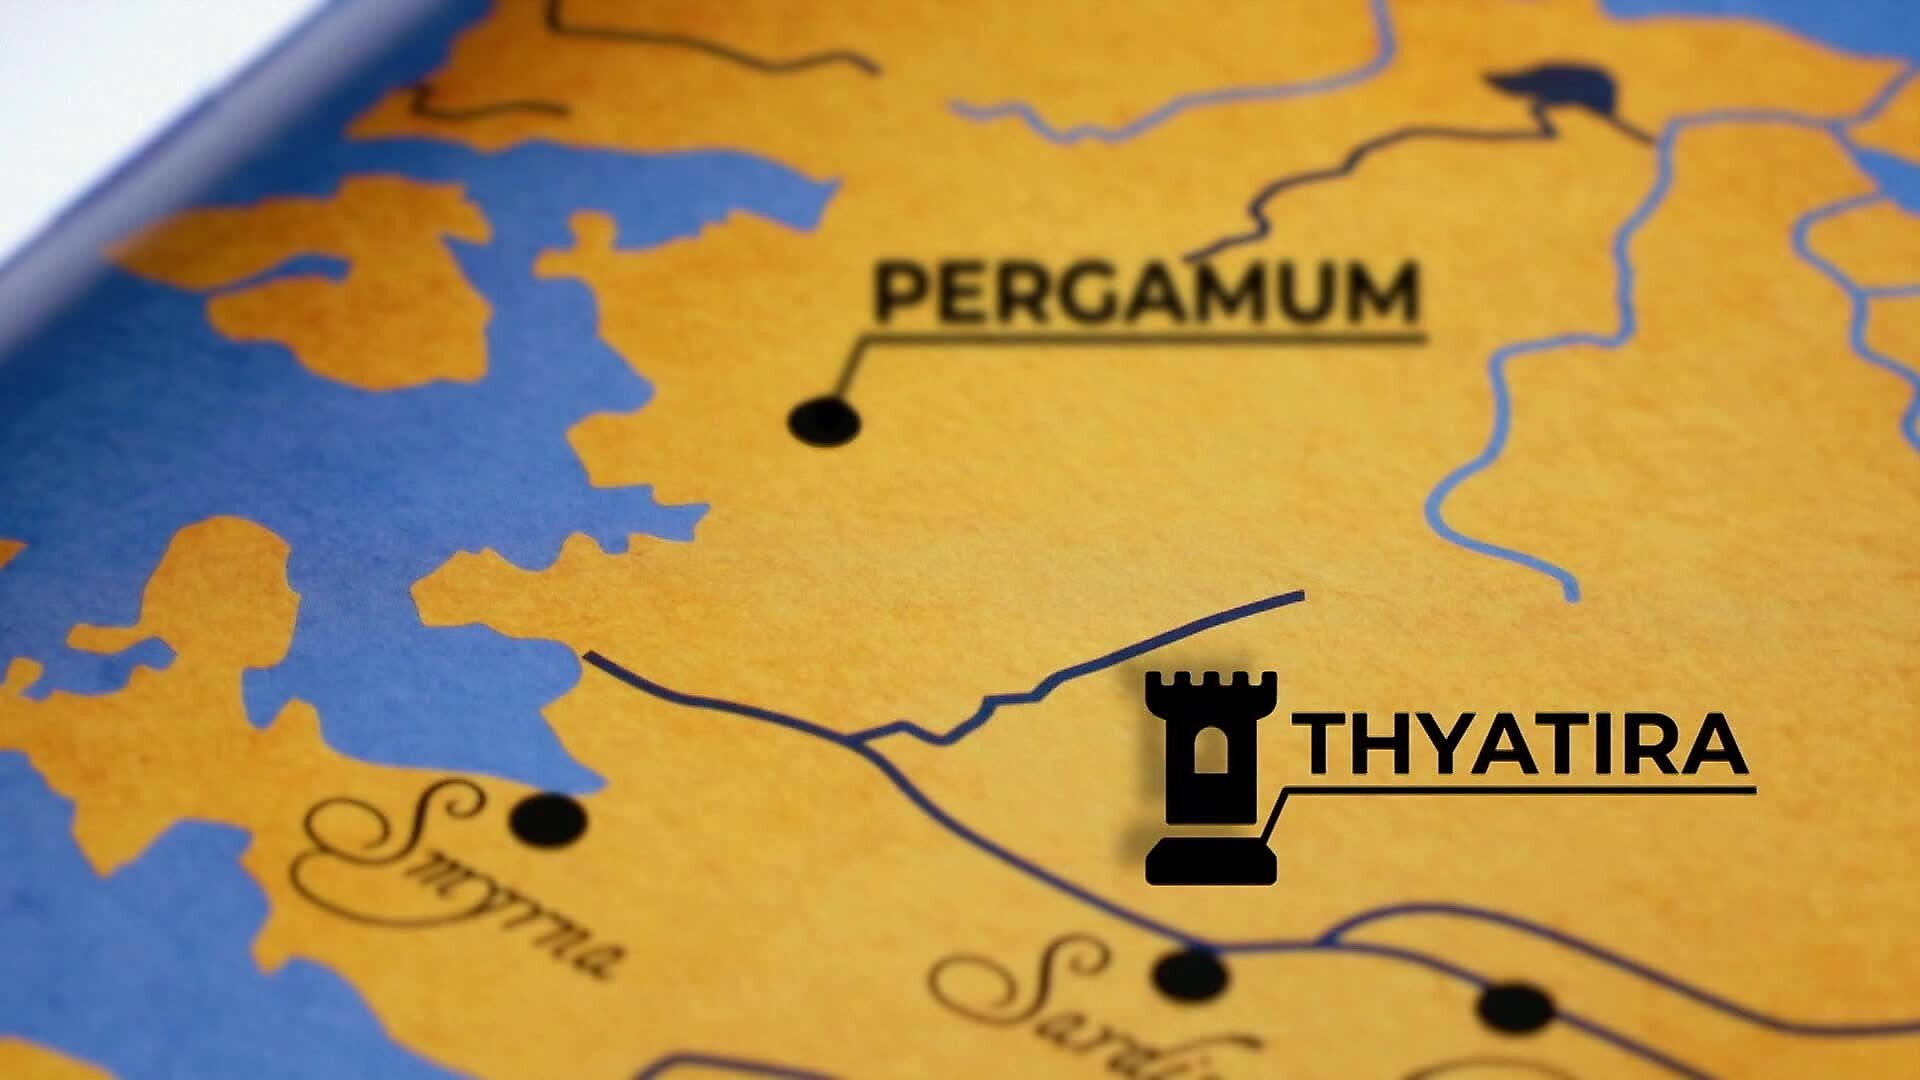 Thyatira: The Defender of Pergamum